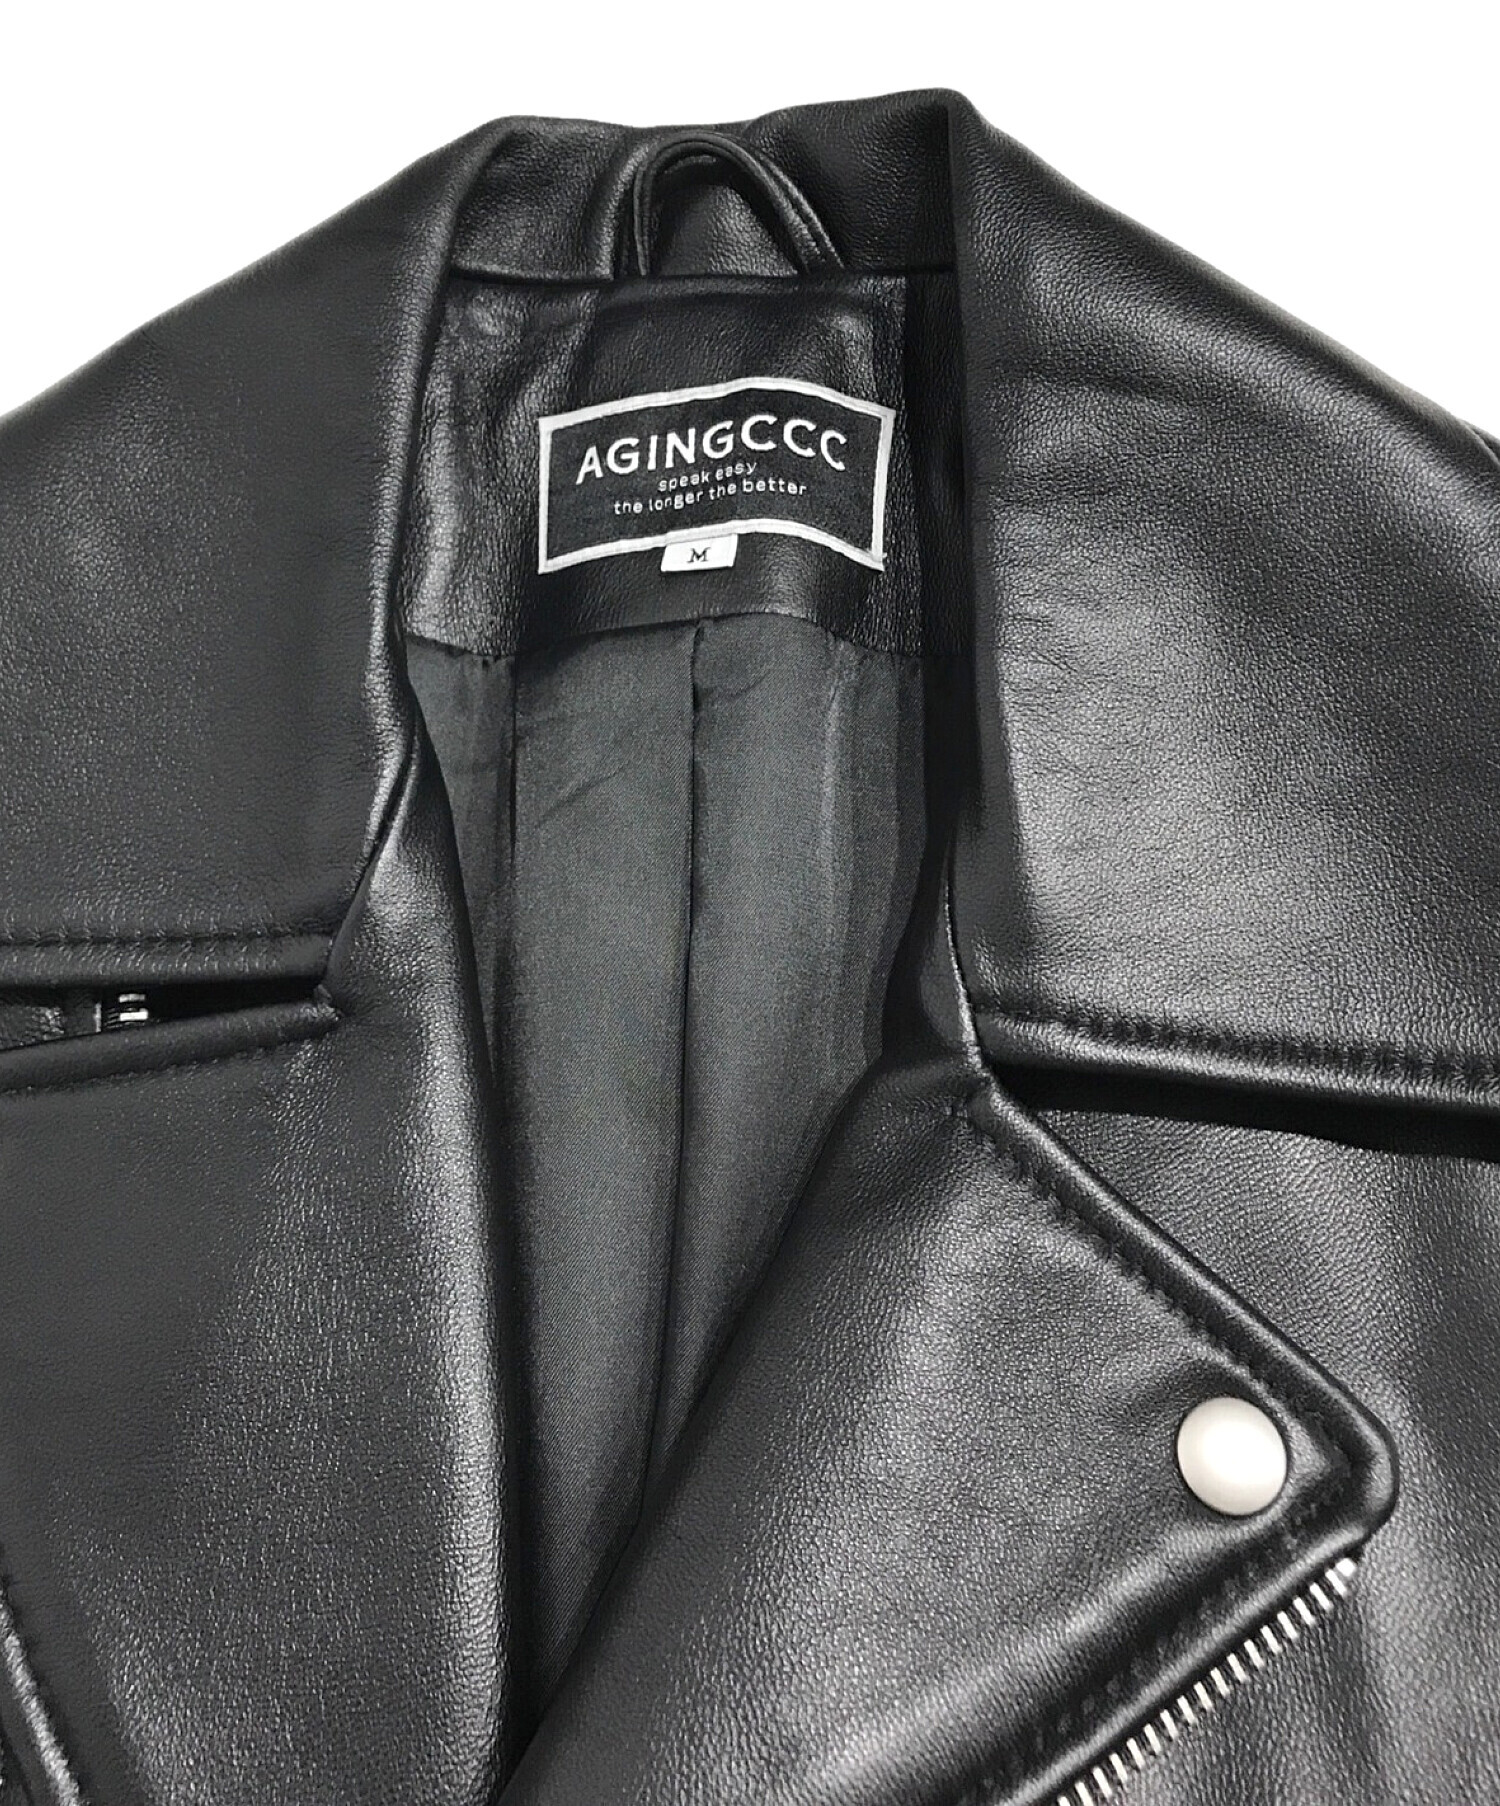 Agingccc (エージングシーシーシー) ダブルライダースジャケット ブラック サイズ:M